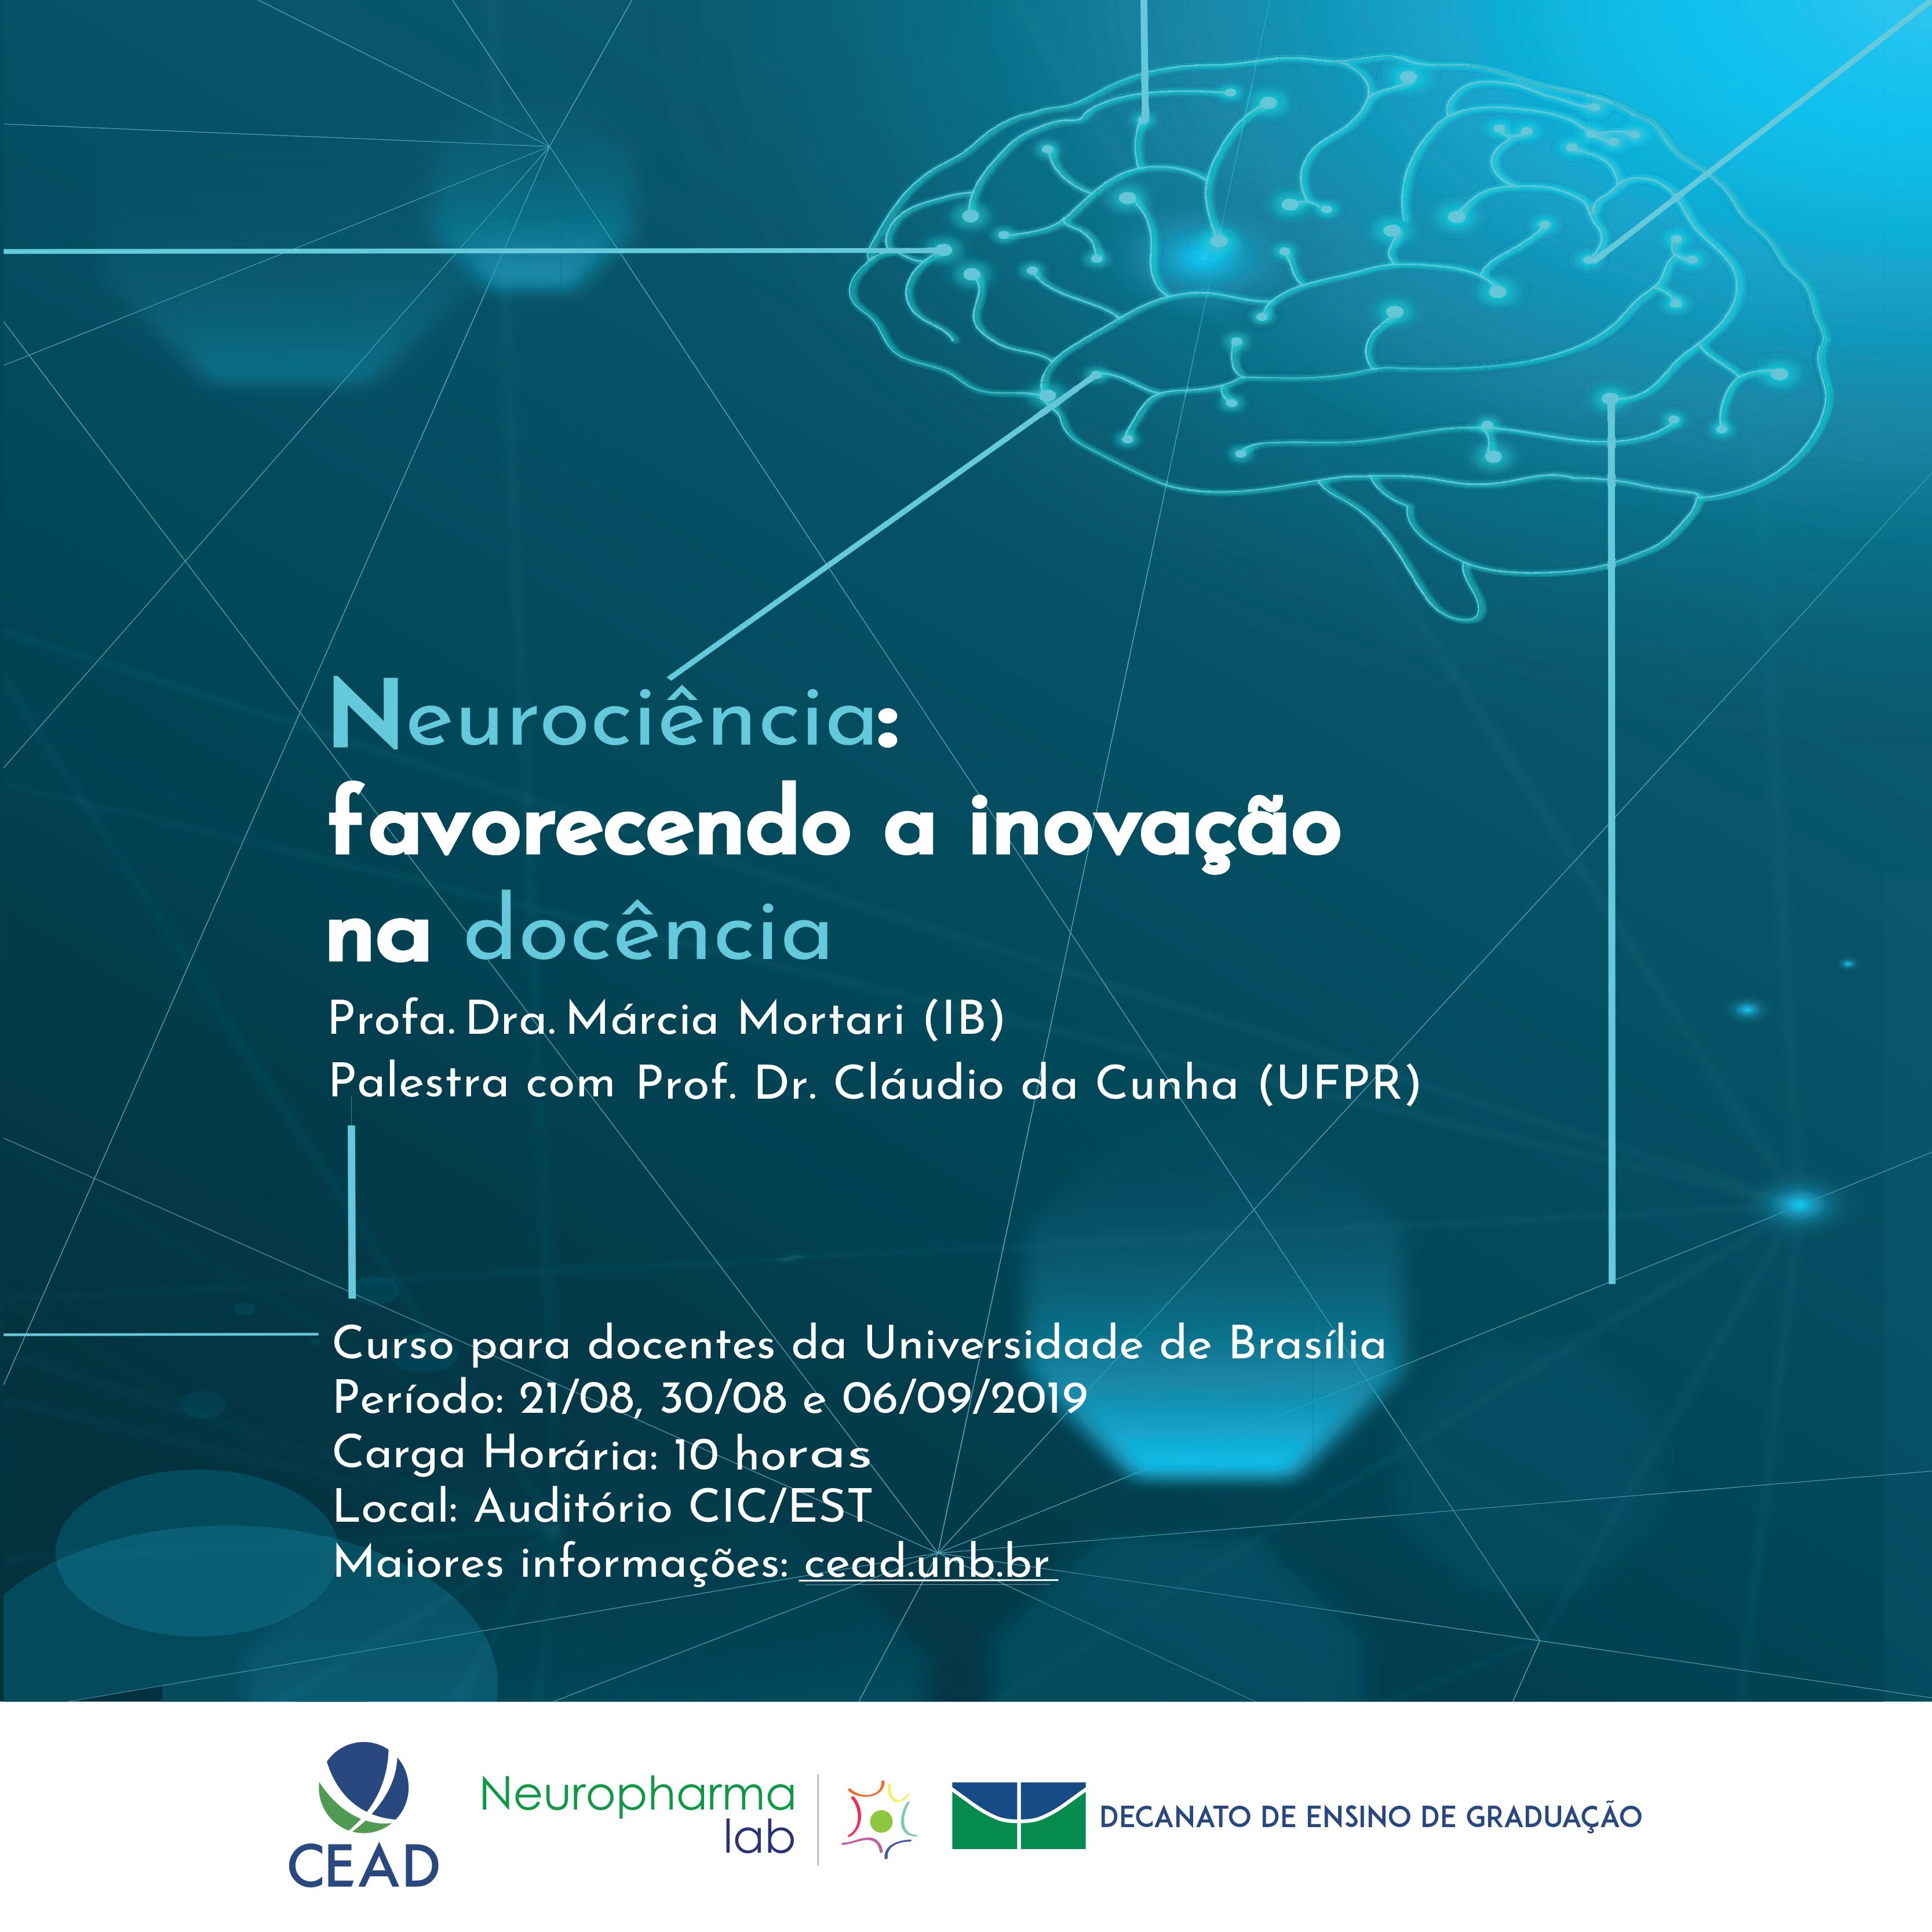 Neurociência: favorecendo a inovação na docência